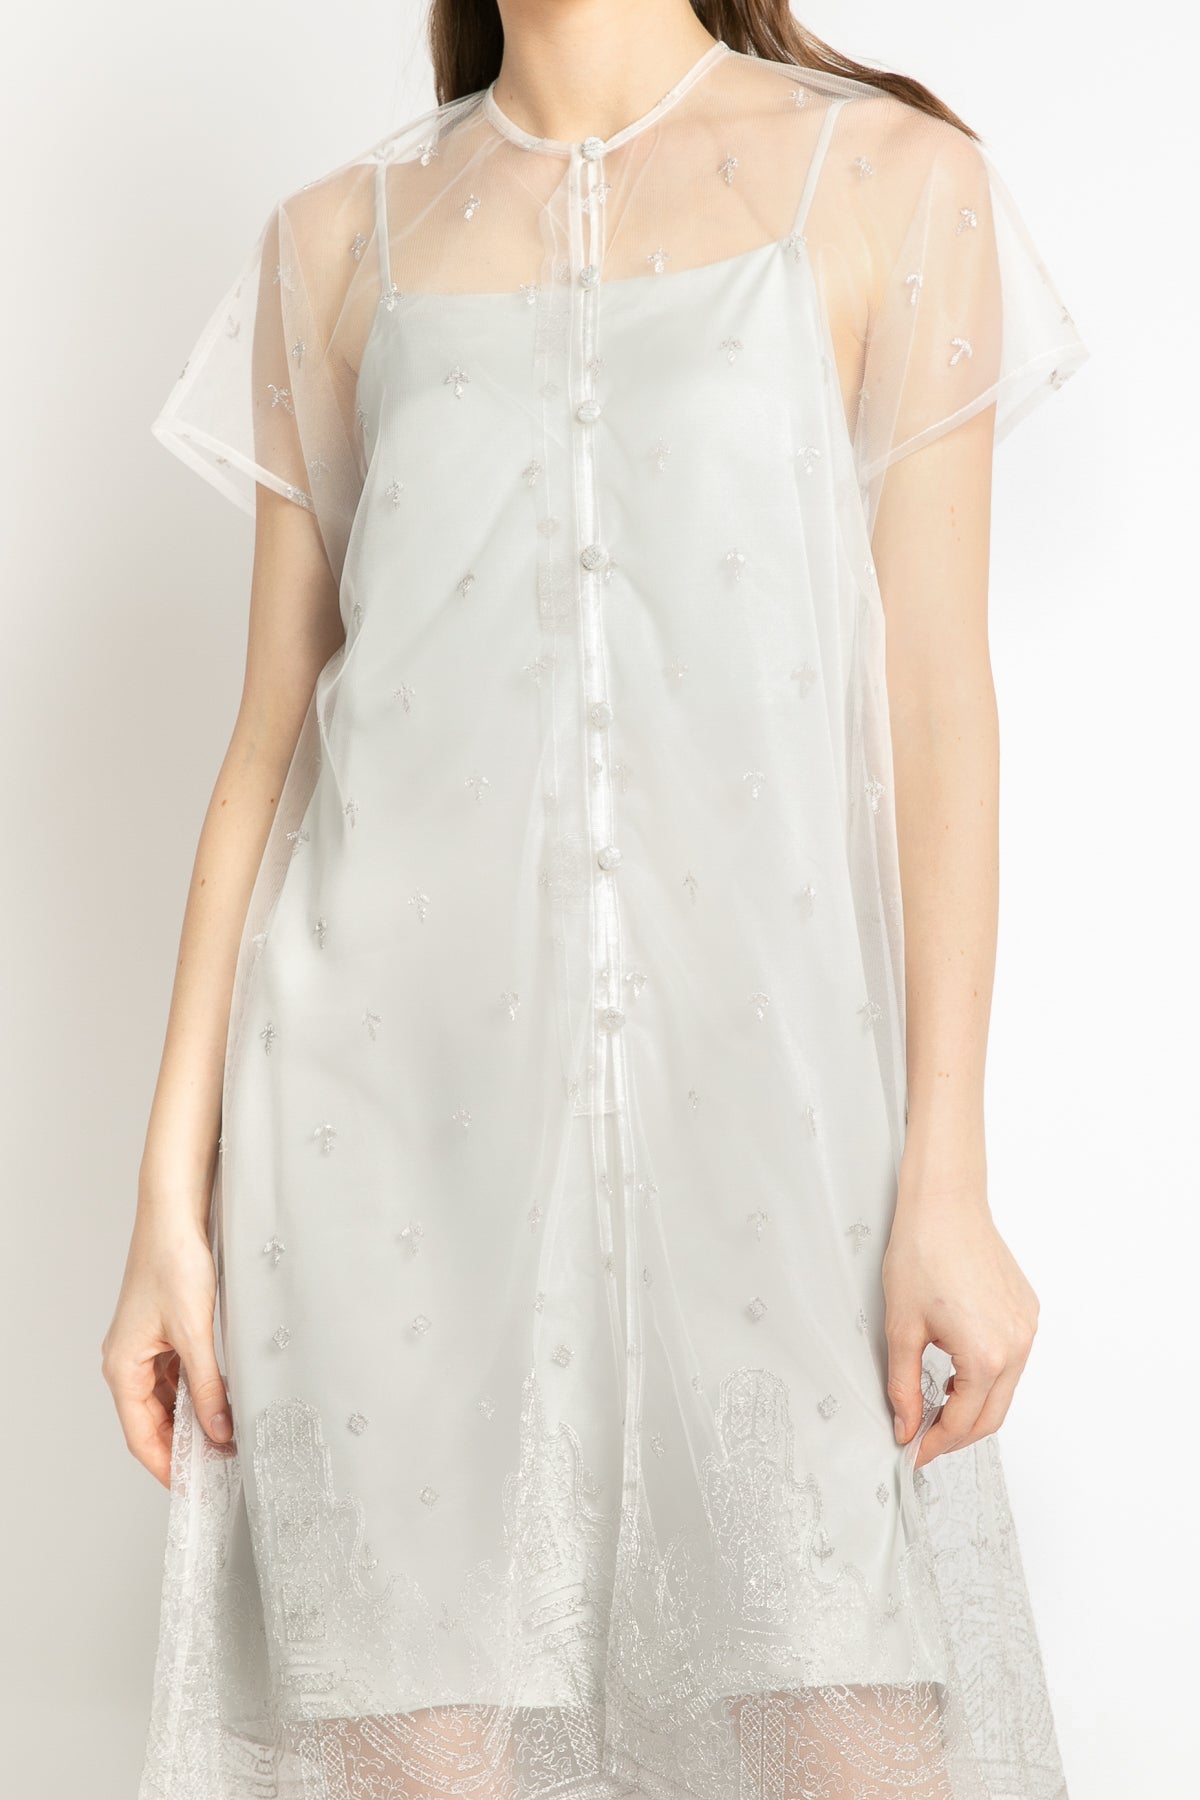 Laras Dress in White